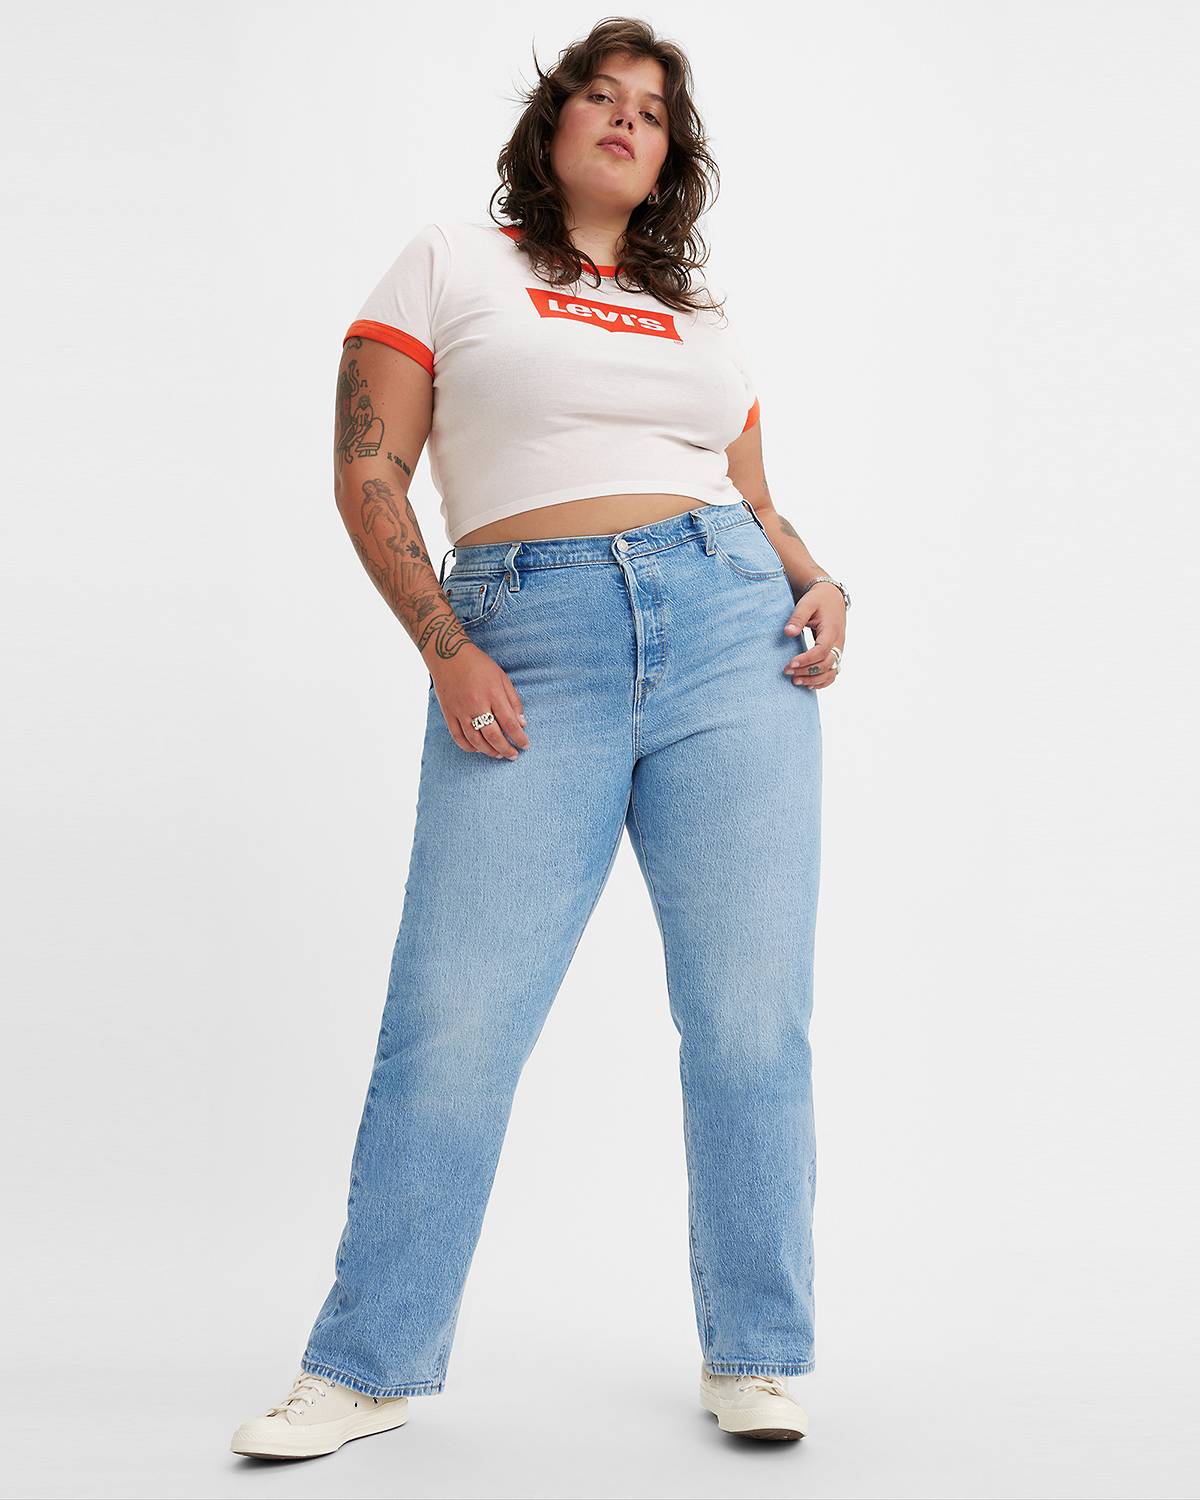 Manteau jeans femme vintage femme année 80 grandeur 14 -  Canada